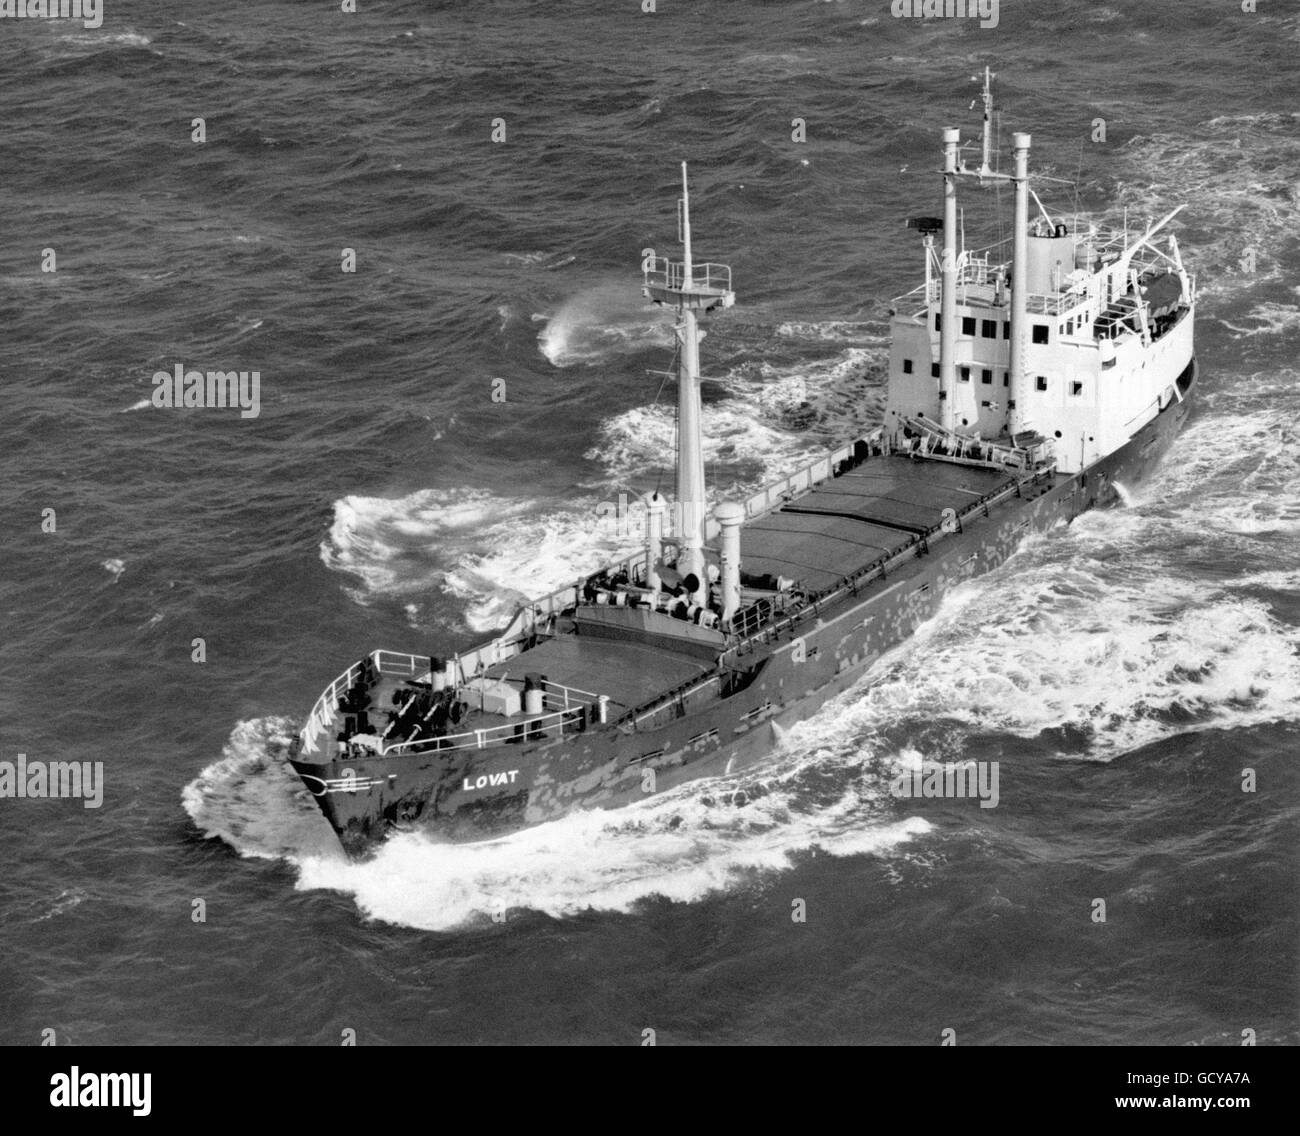 Le cargo britannique MV Lovat, qui a coulé dans des gales au large de Land's End, en Cornouailles. Onze hommes d'équipage ont été perdus. Banque D'Images